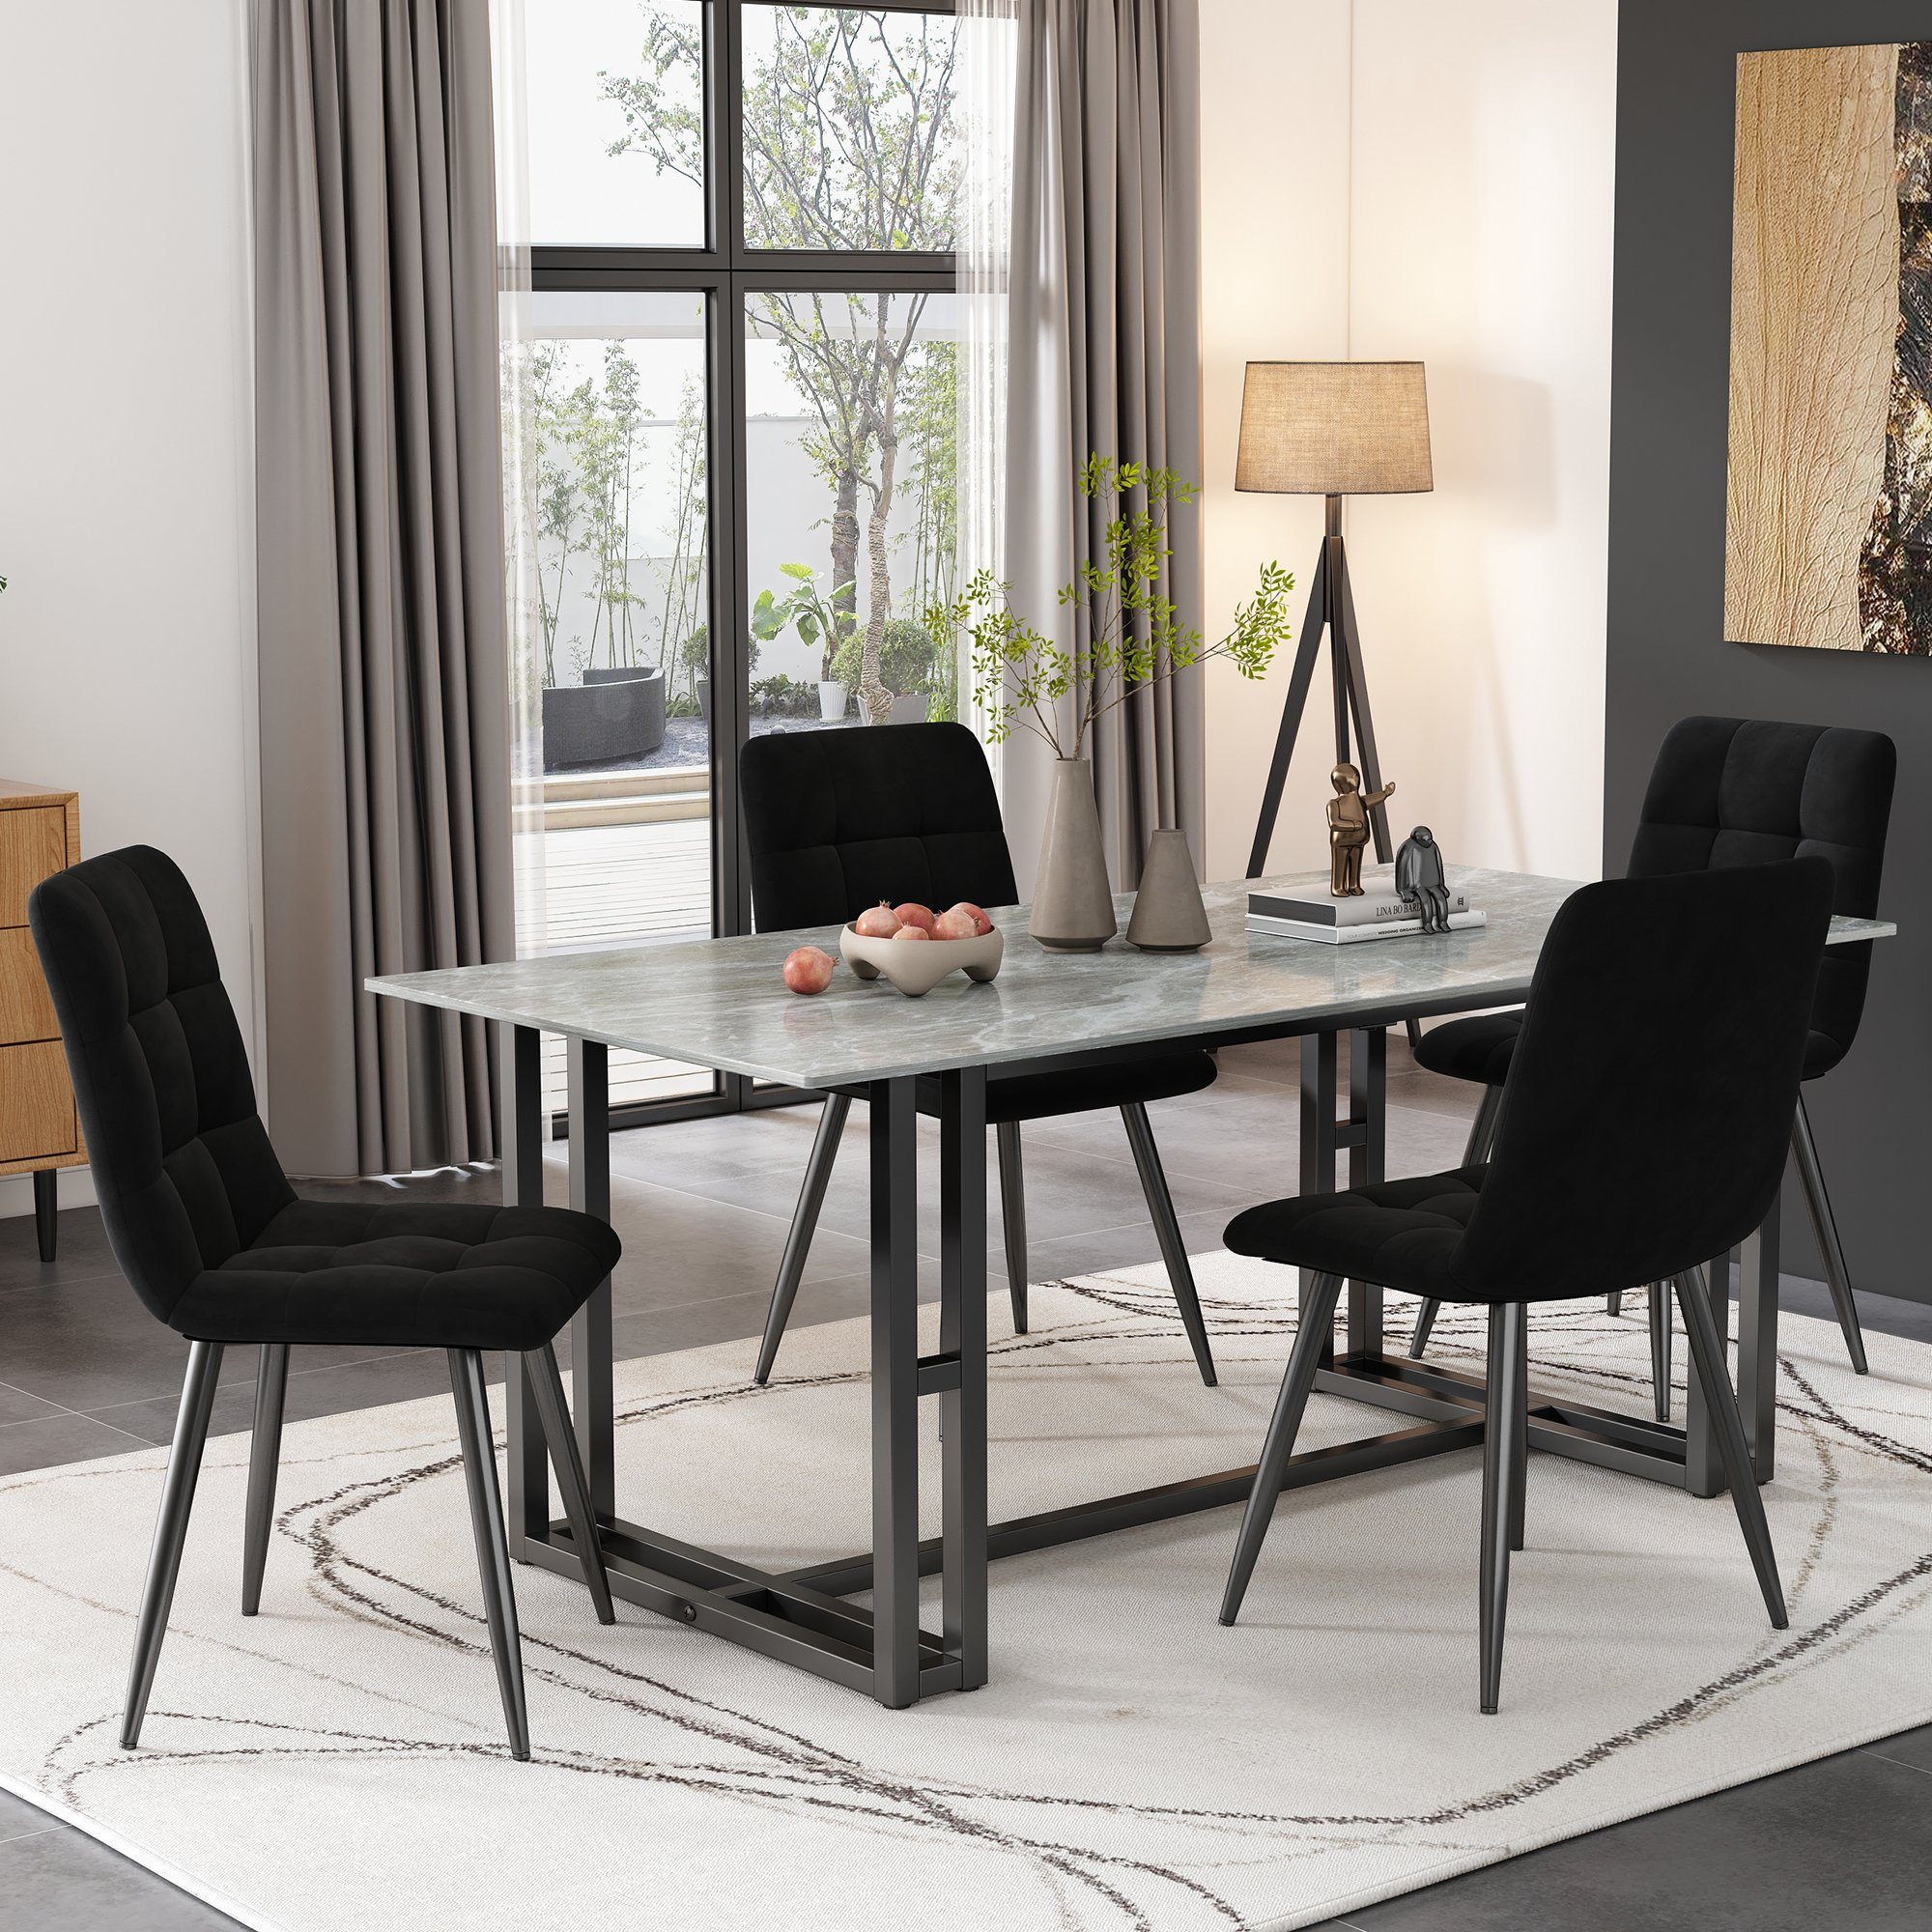 EXTSUD Esszimmerstuhl Esszimmerstuhl (4 St), Schwarz, Polsterstuhl Design Stuhl, Samtoberfläche, Polsterung aus hochdichtem Schaumstoff, Metallbeine | Stühle